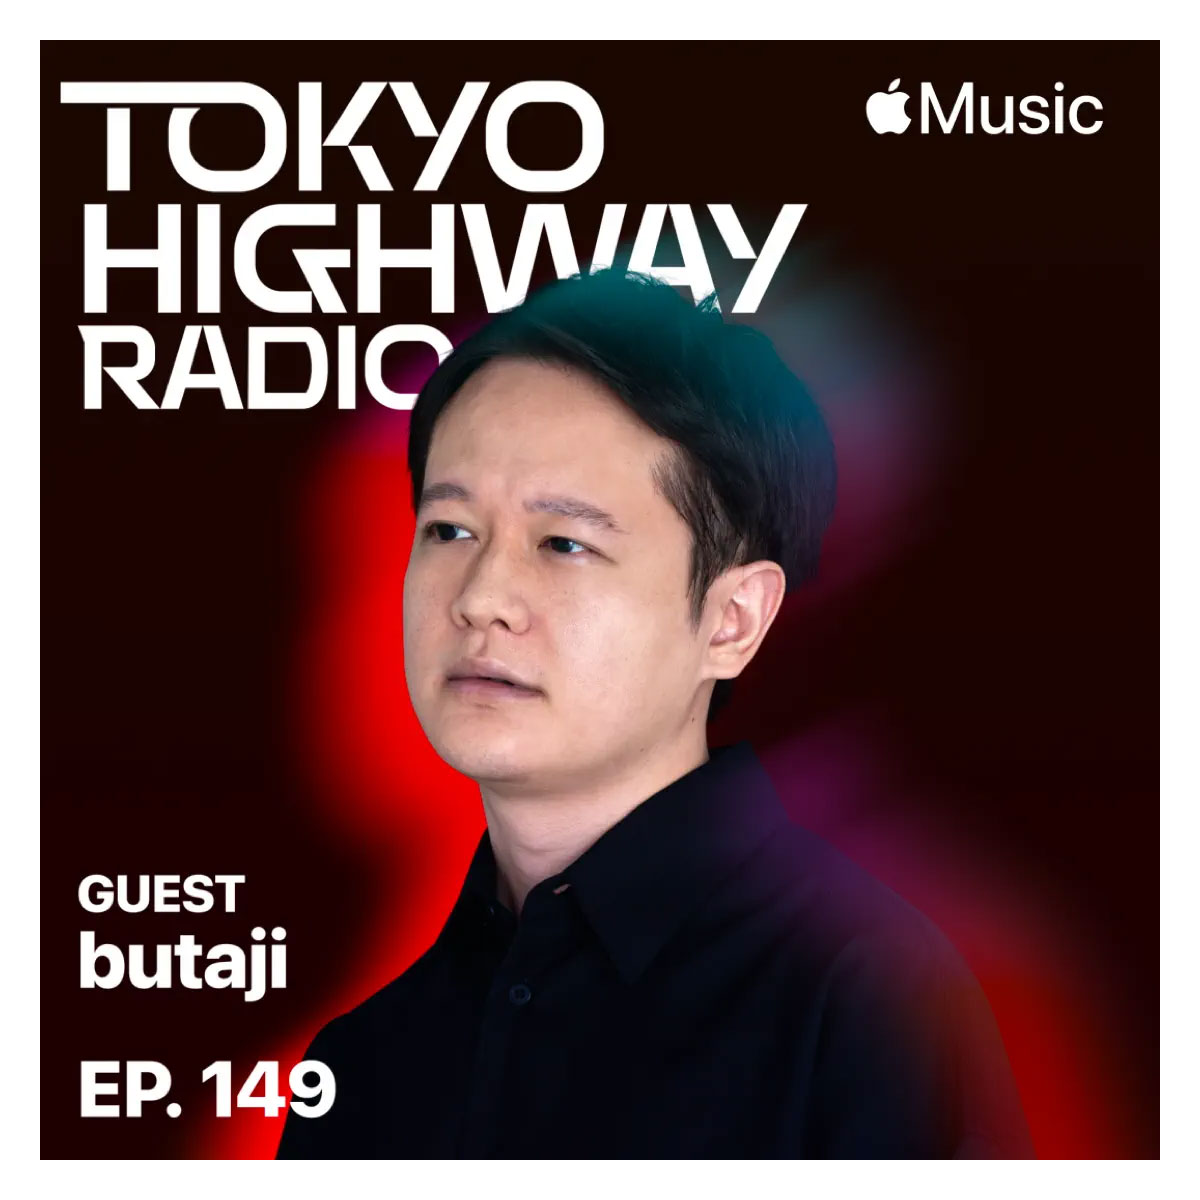 Tokyo Highway Radio with Mino ゲスト：butaji